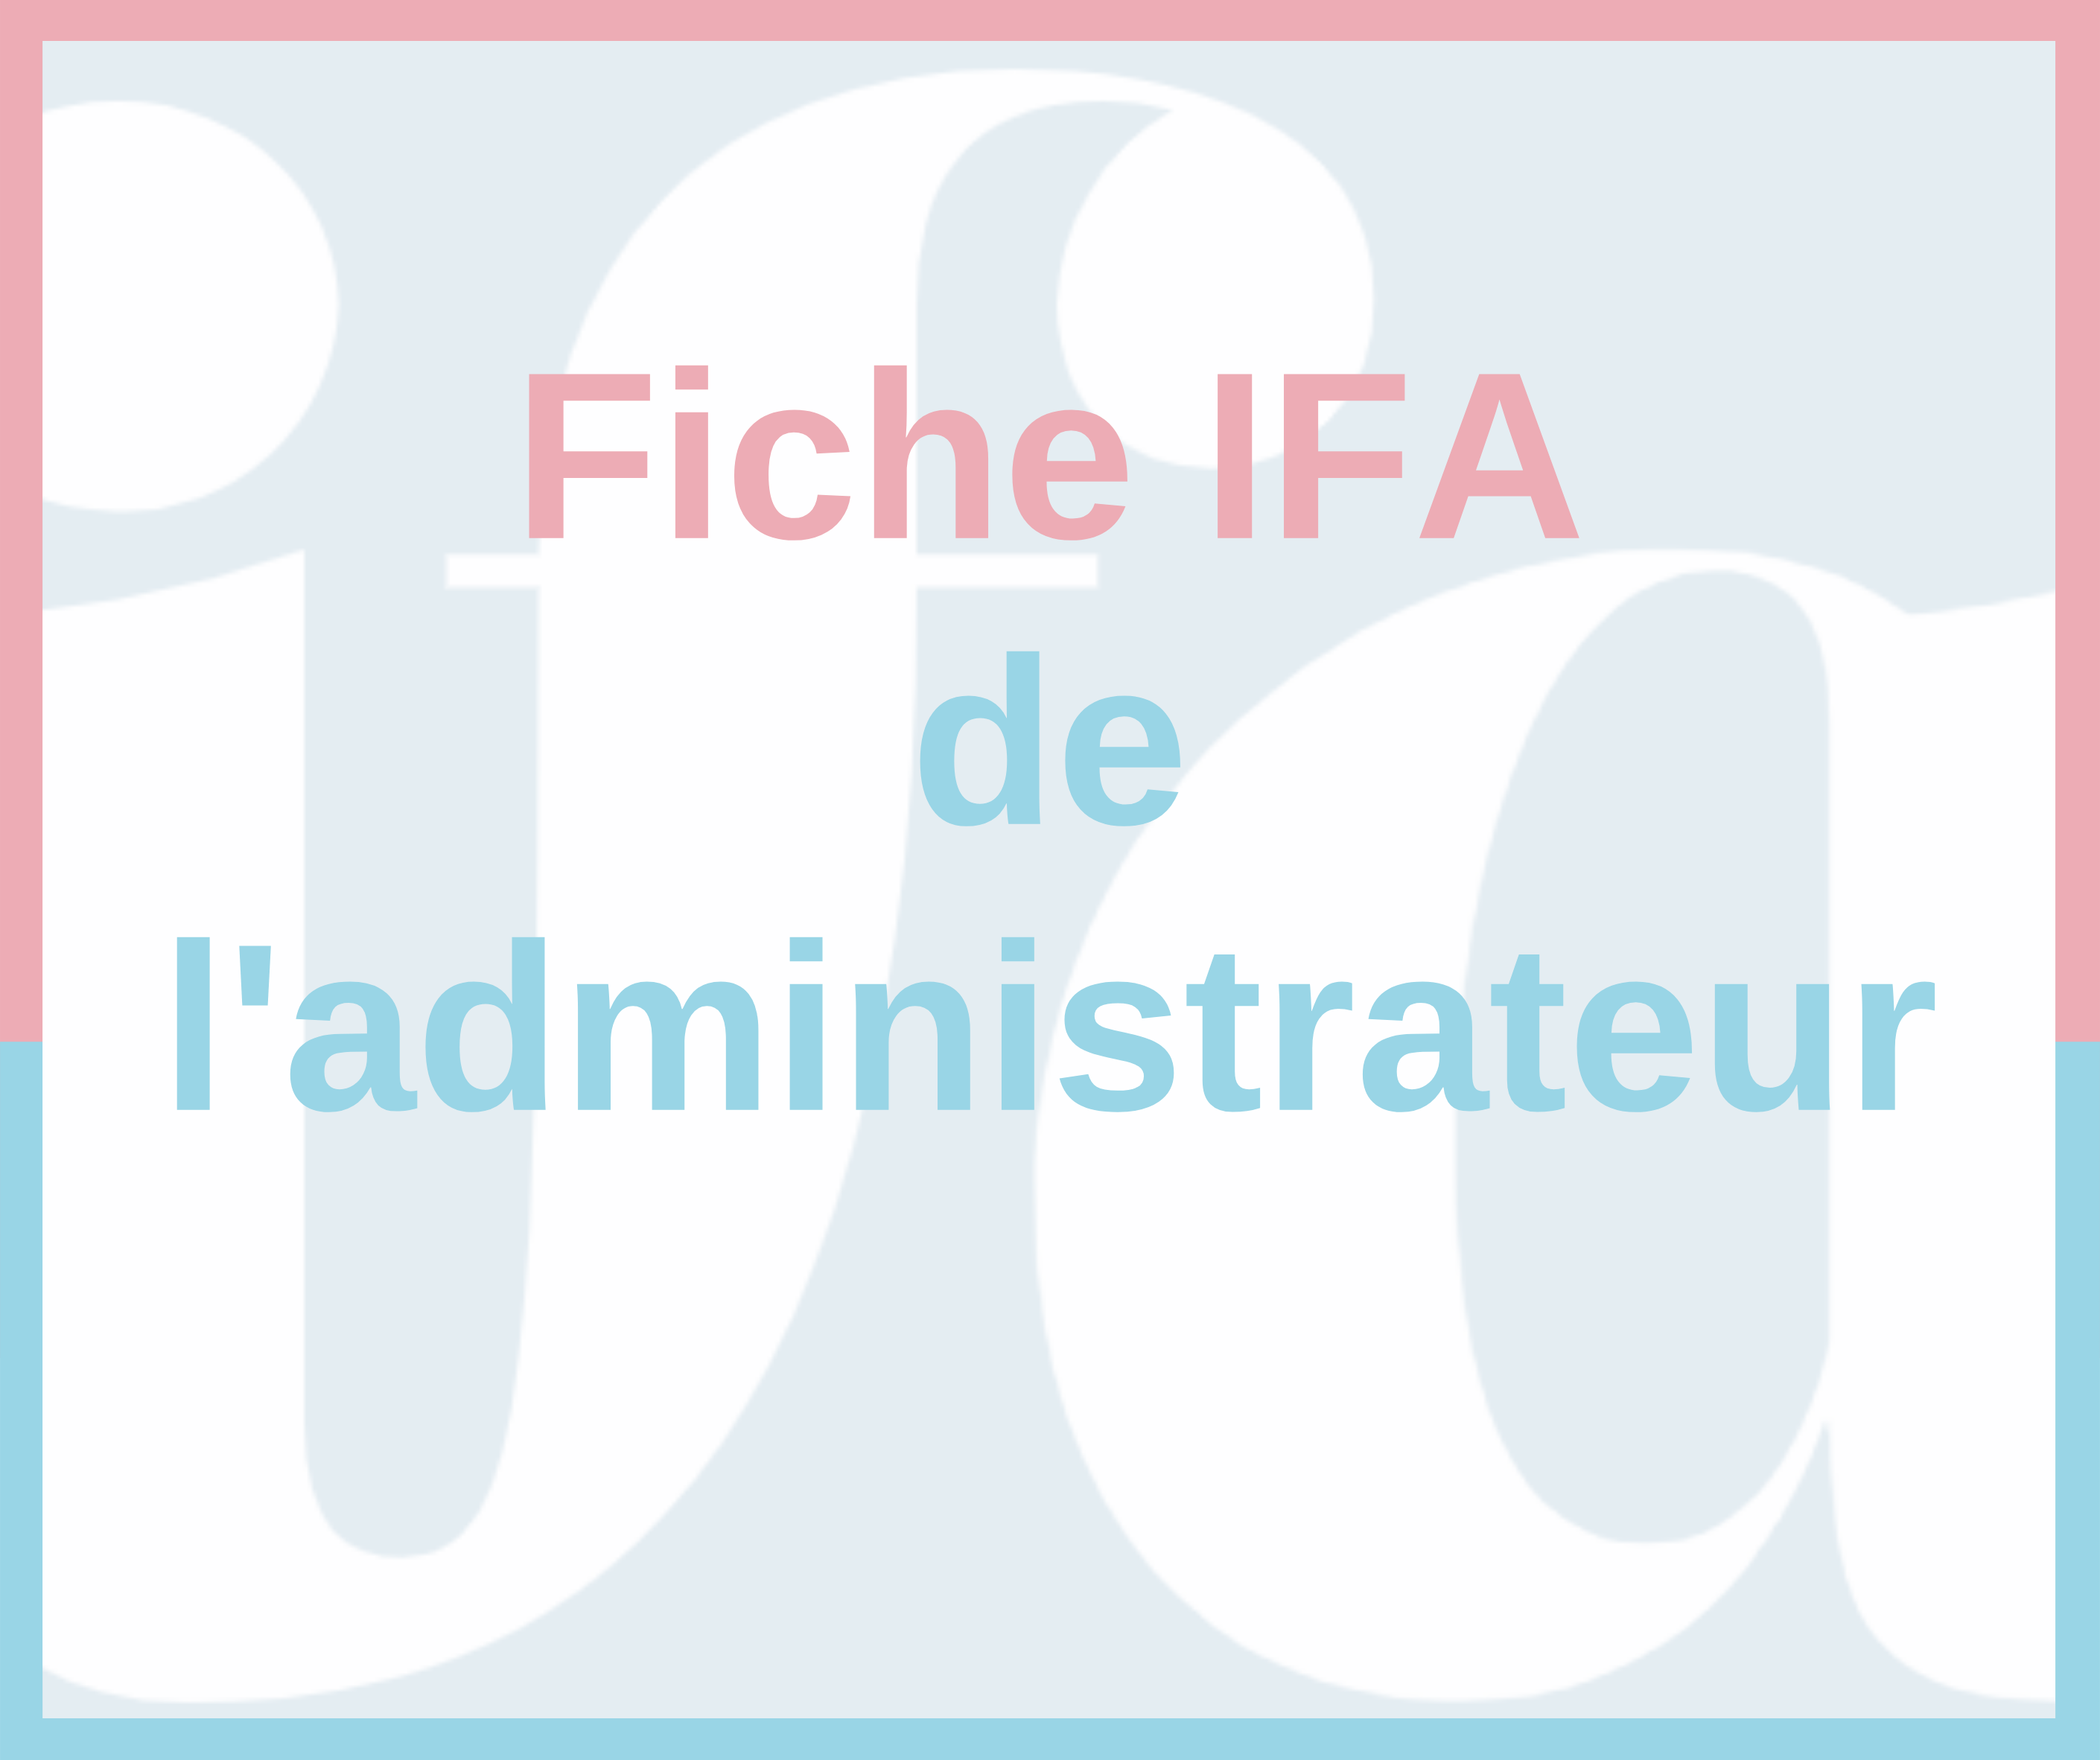 Fiche IFA de l'administrateur - Rapport AMF 2020 sur le gouvernement d'entreprise et la rémunération